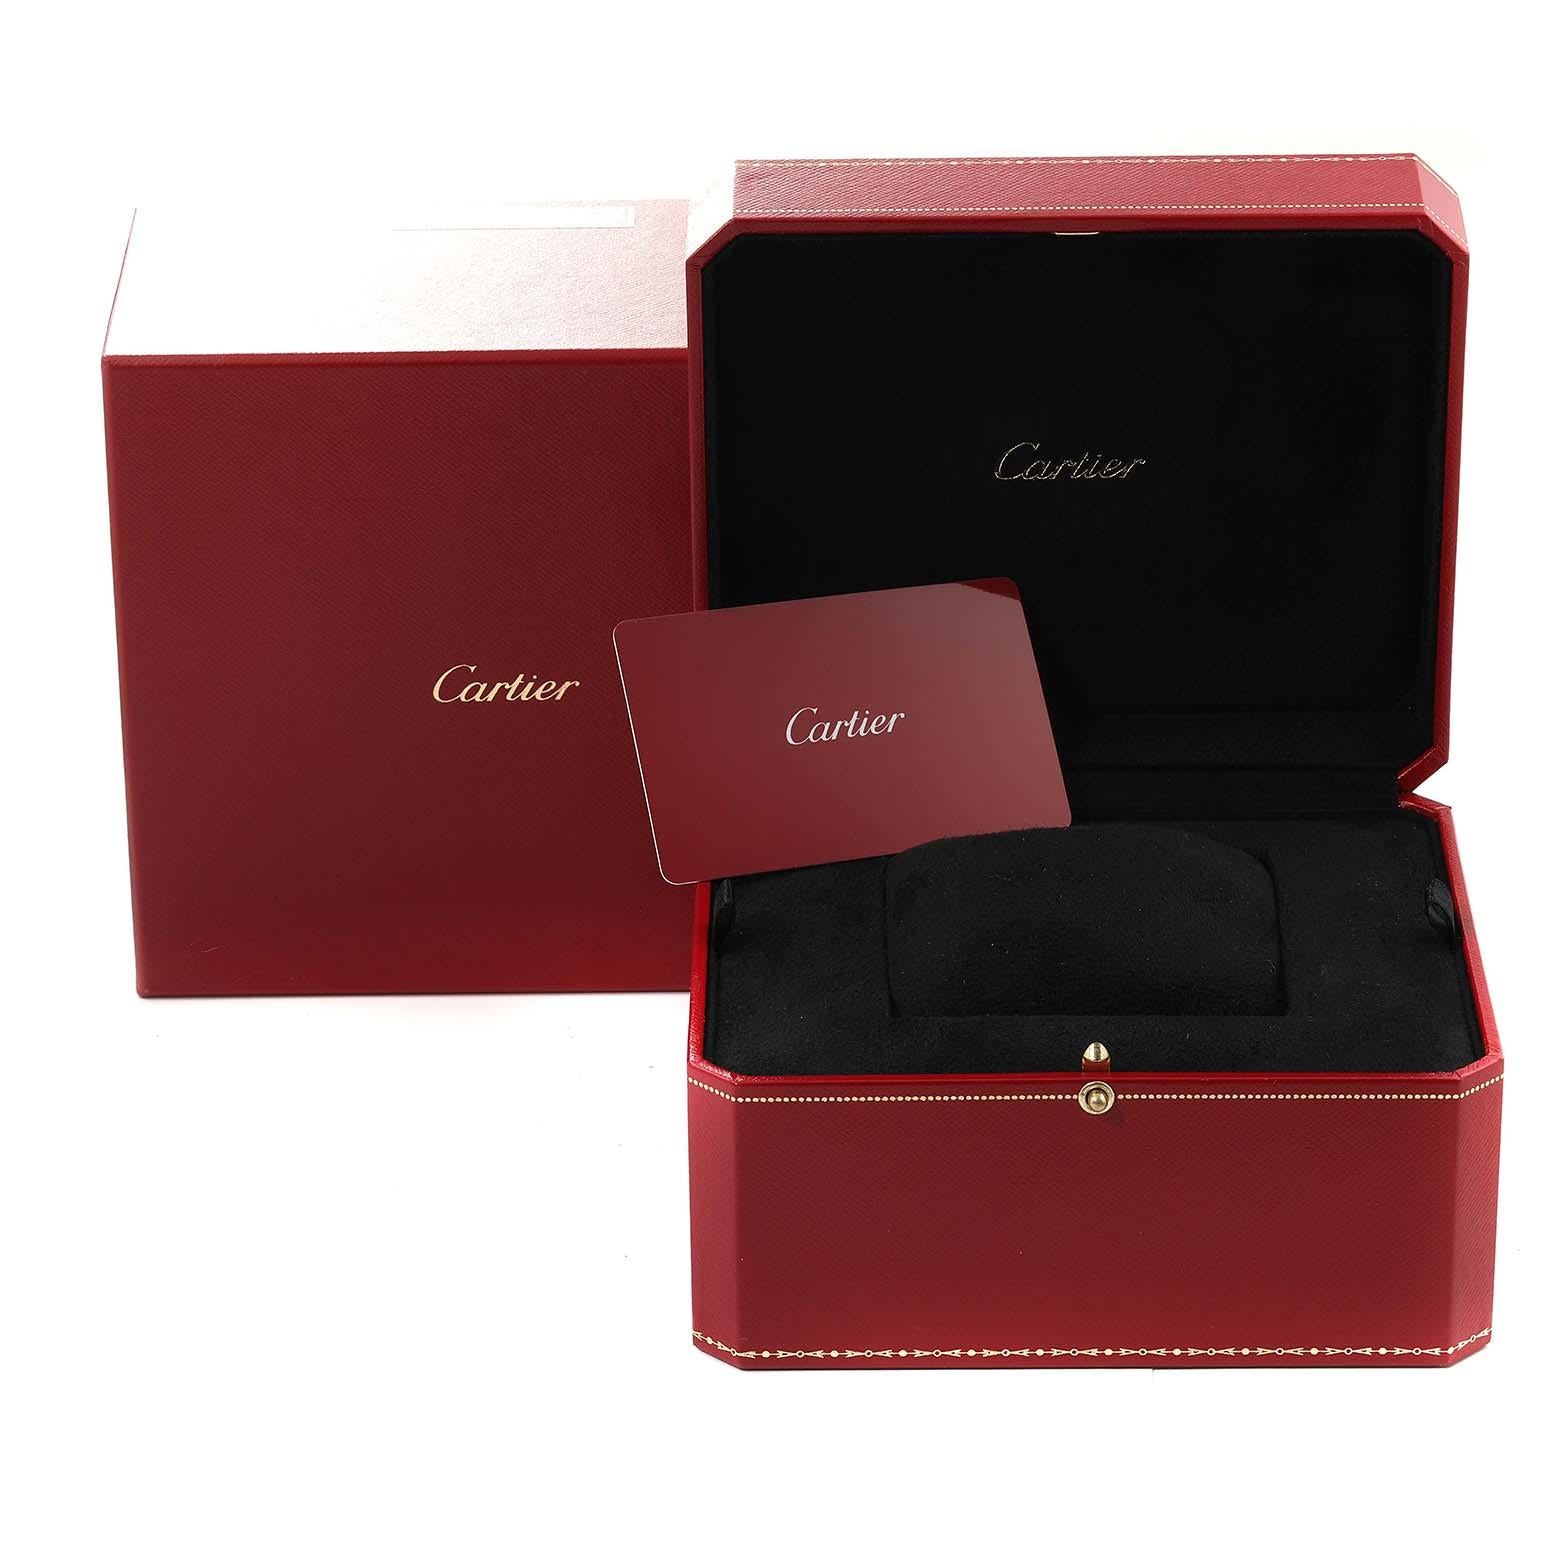  Cartier Santos Dumont XL Steel Rose Gold Edition Limitée pour hommes W2SA0025  Pour hommes 